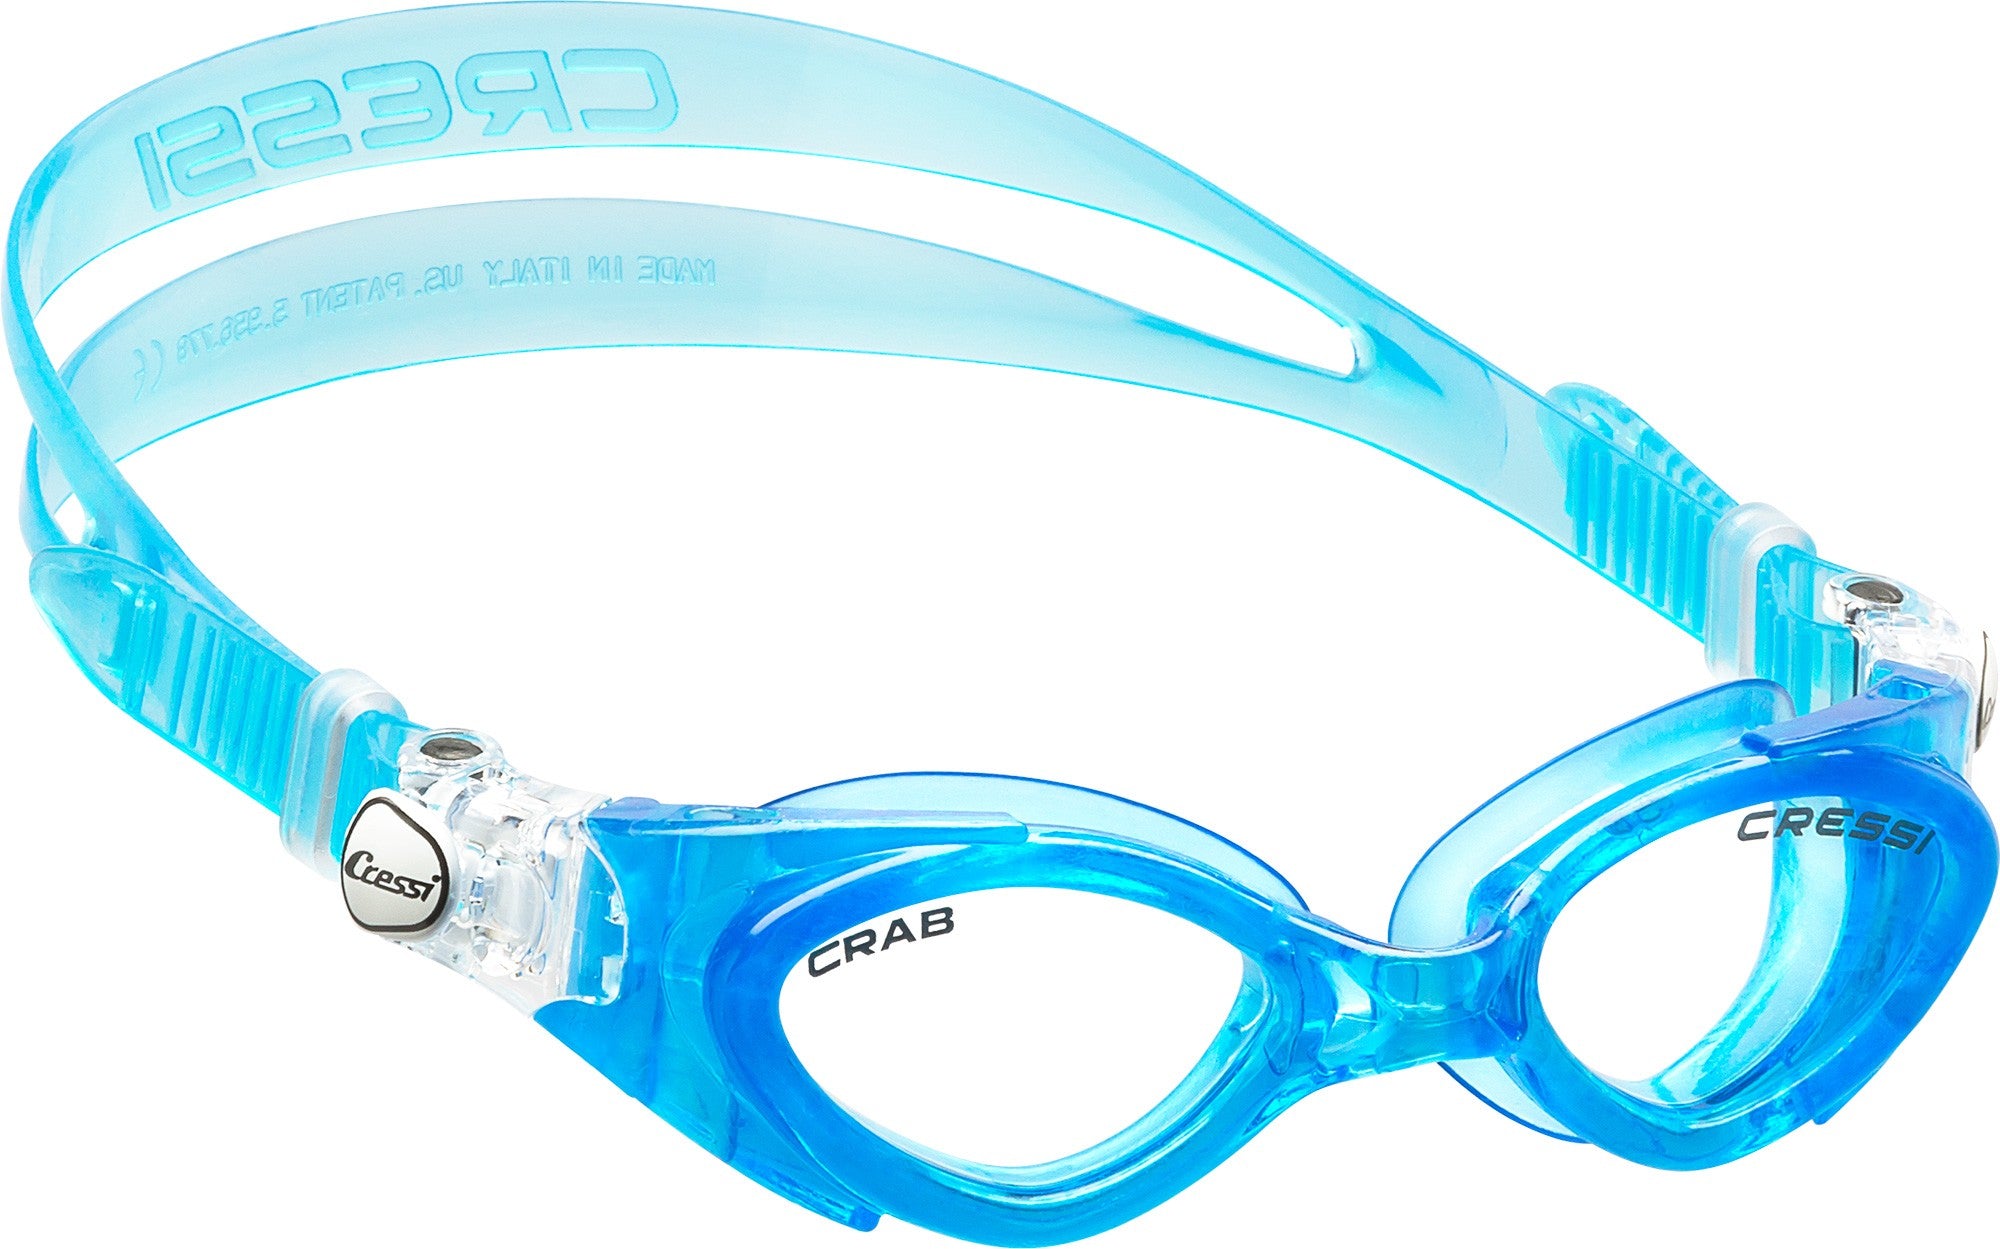 Cressi Crab Junior Kids Swimming Goggles